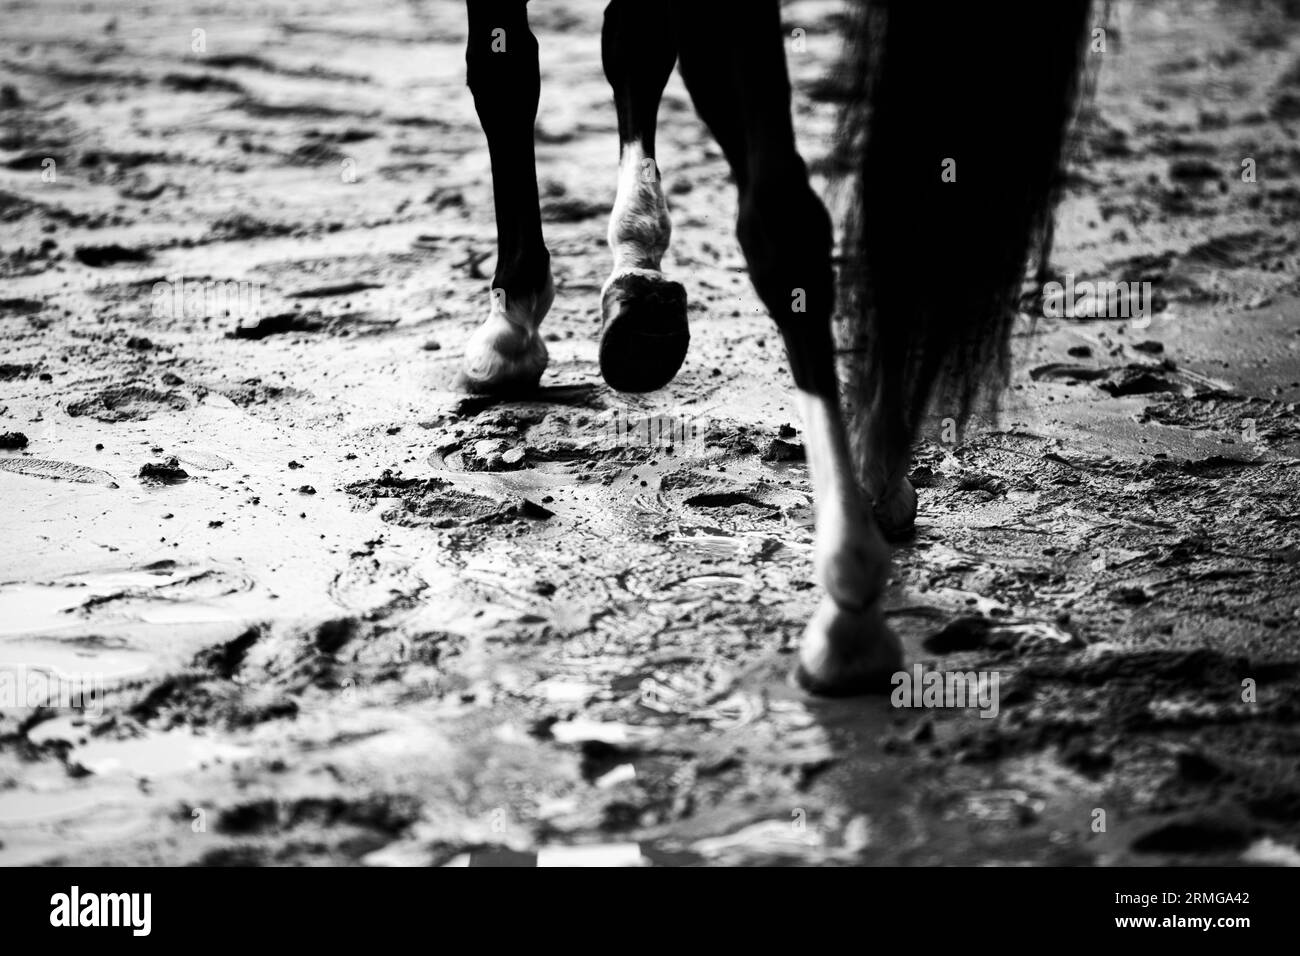 Dieses Schwarzweiß-Foto zeigt ein schwarzes Pferd, das nach Regenfällen an einem Strand durch nassen Sand trottet. Kraft, Freiheit und Schönheit. Stockfoto